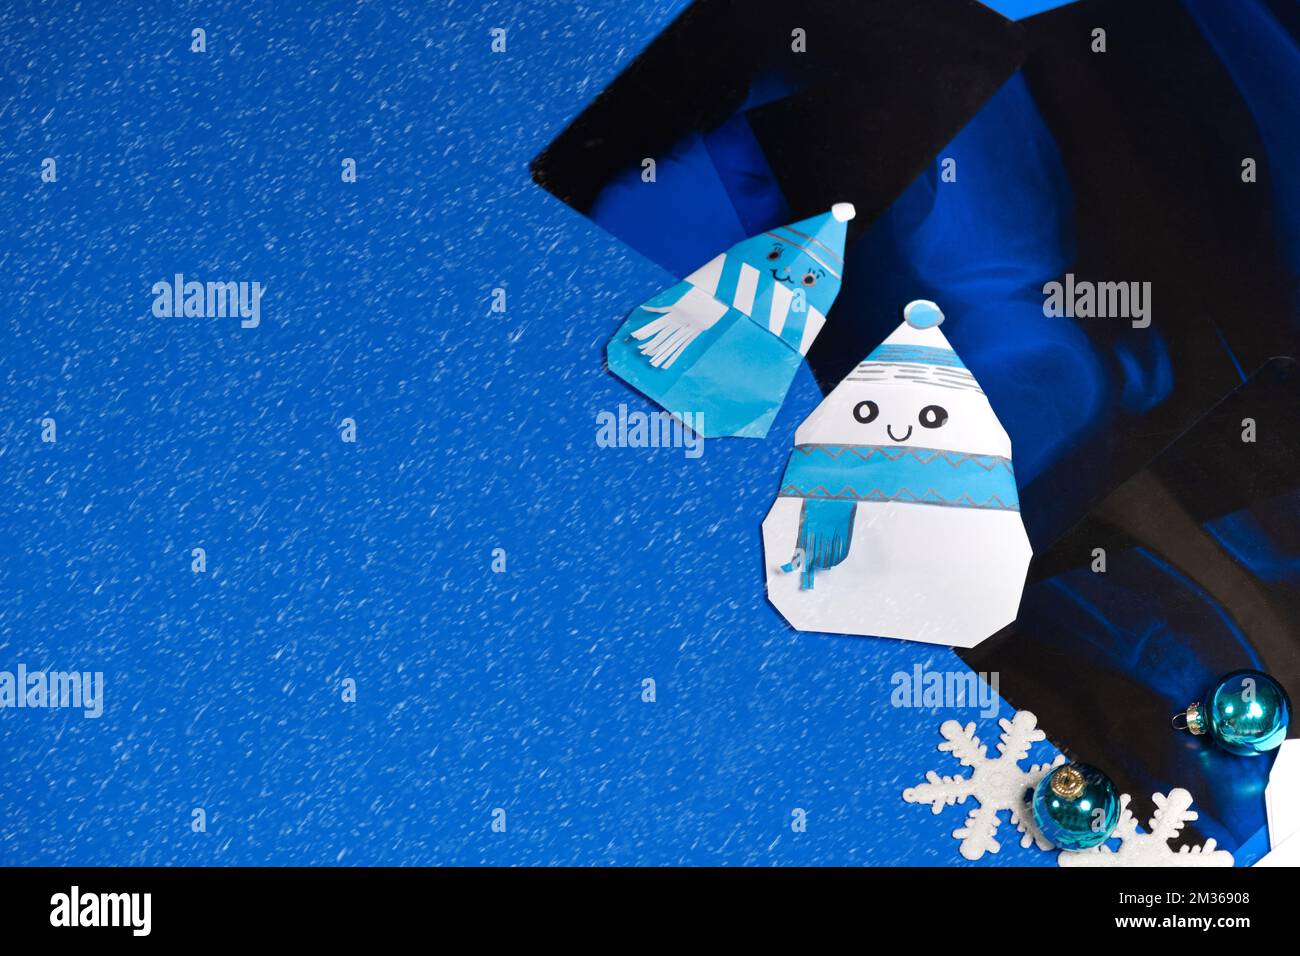 Radiologia natalizia - raggi X, pupazzi di neve e fiocchi di neve su sfondo blu, luogo di testo Foto Stock